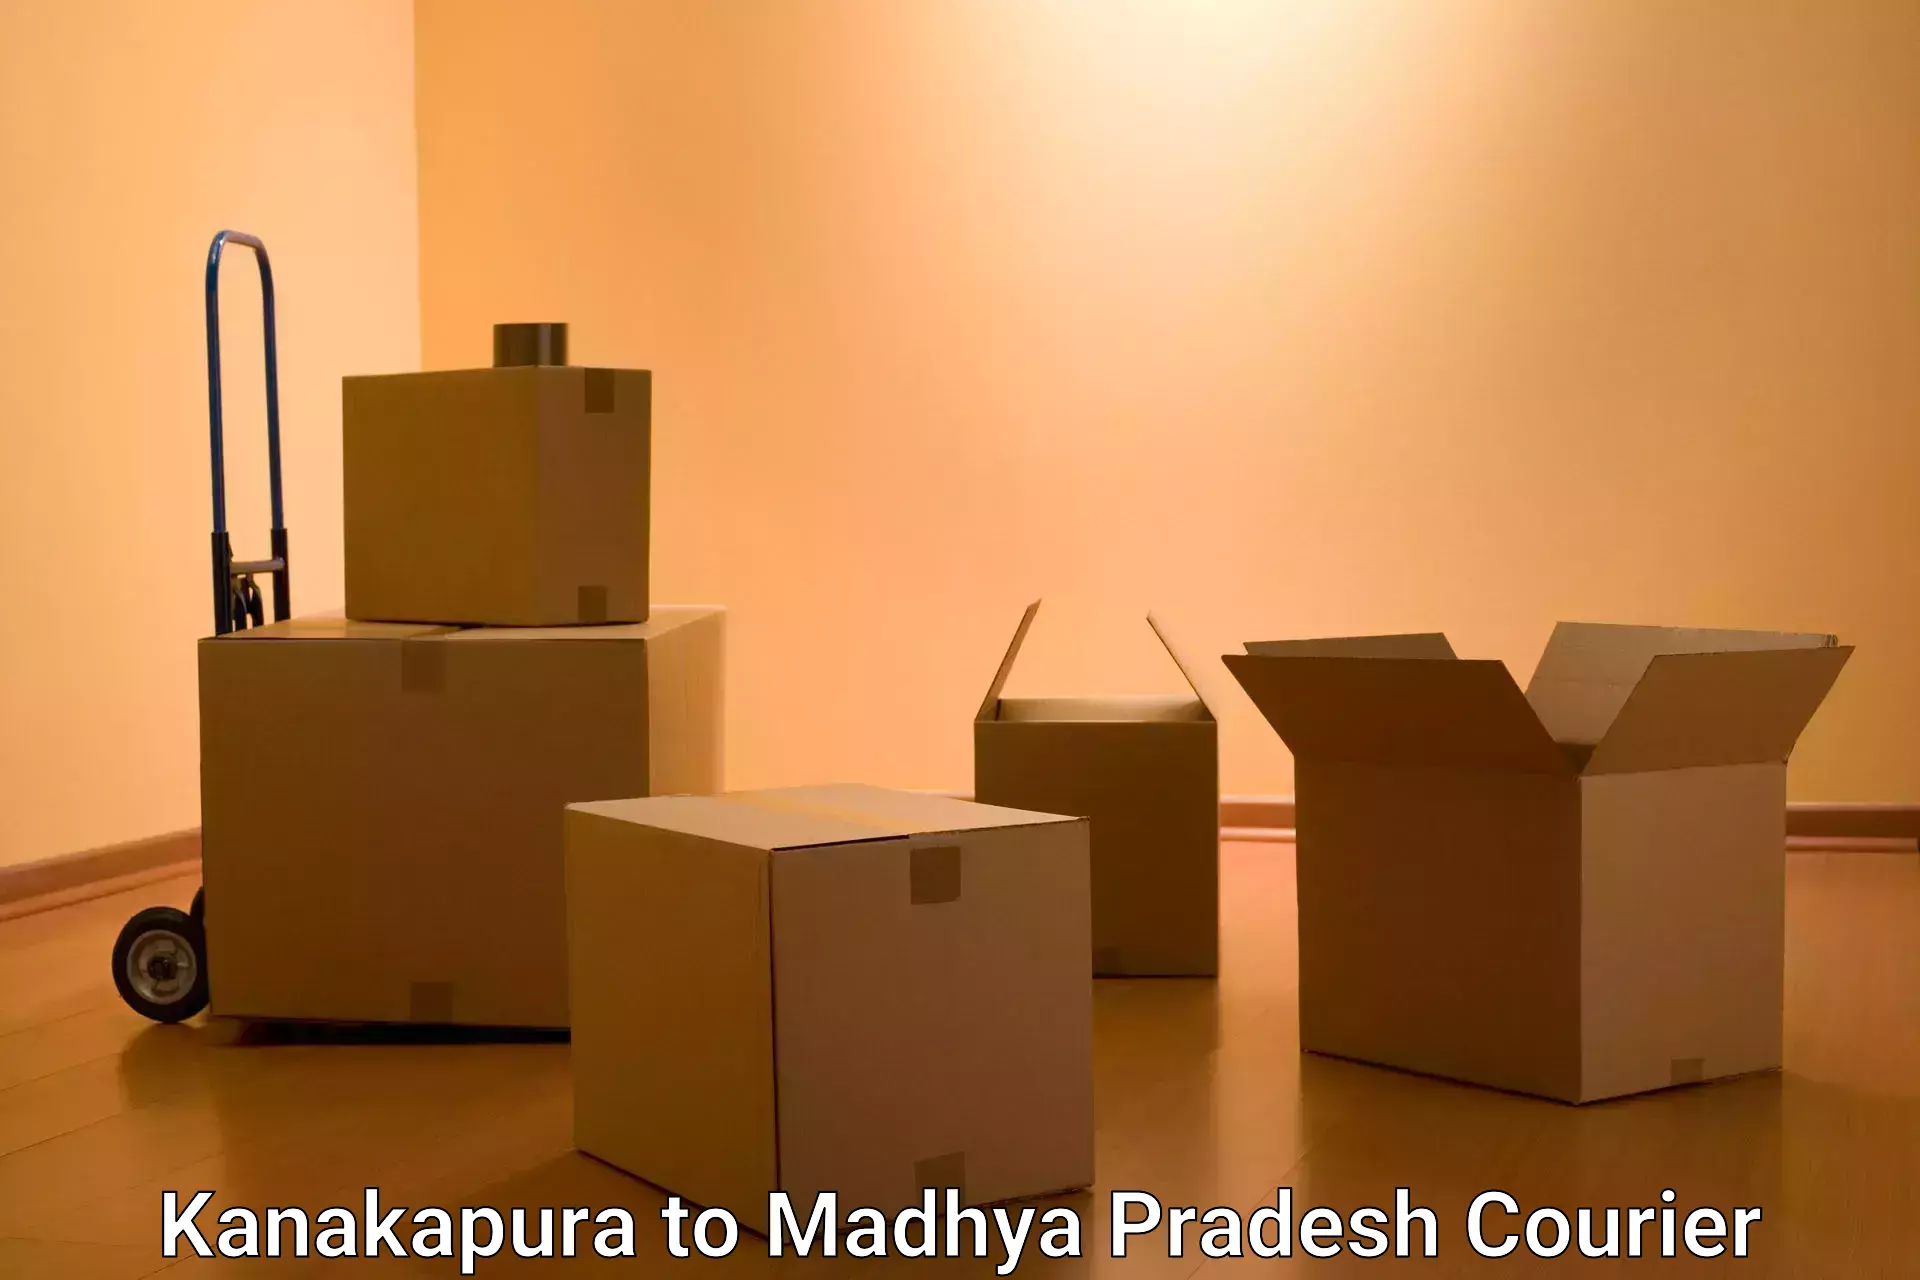 Global shipping networks Kanakapura to Madhya Pradesh